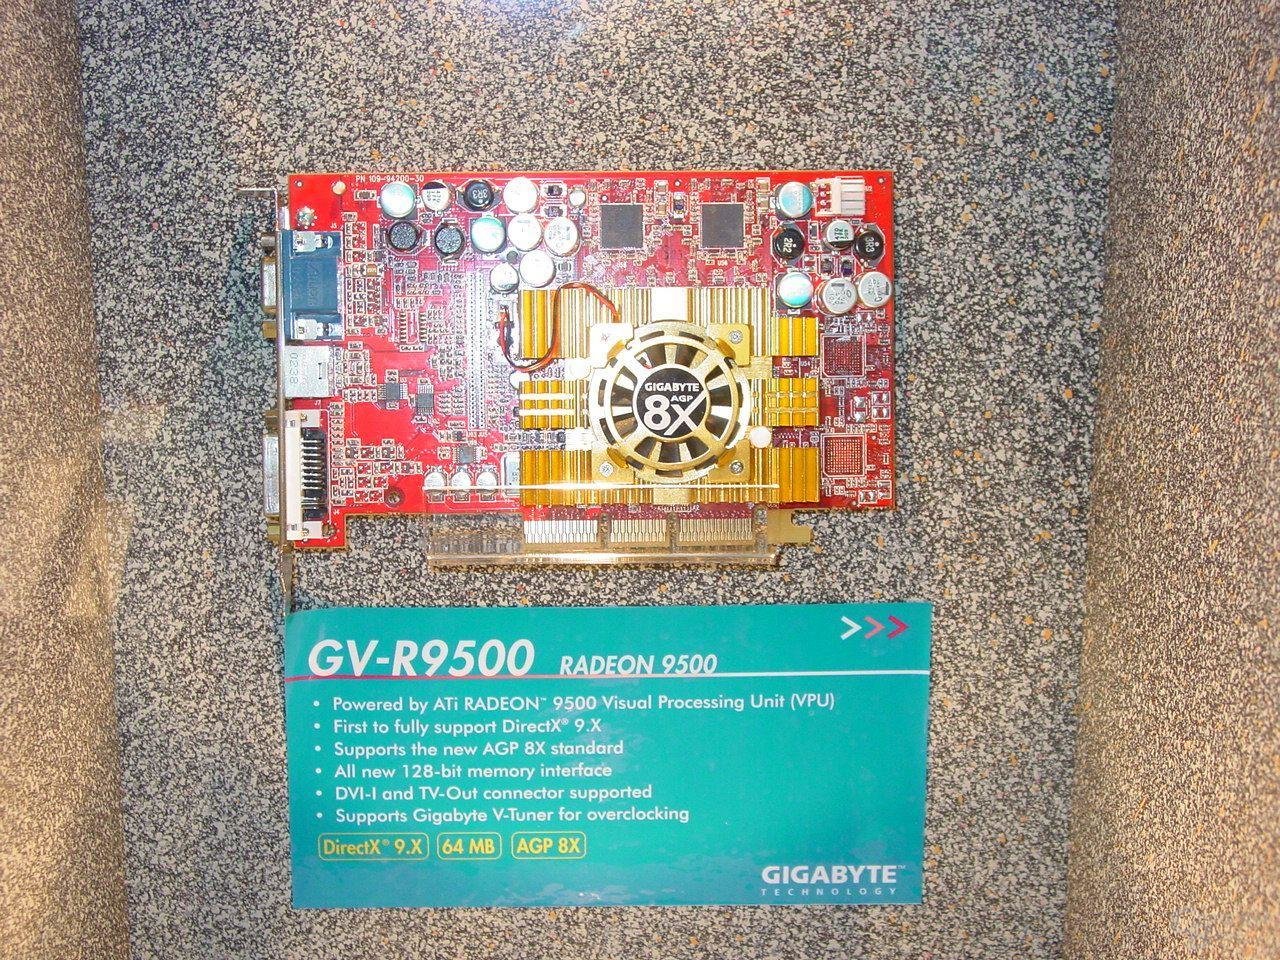 Radeon 9500